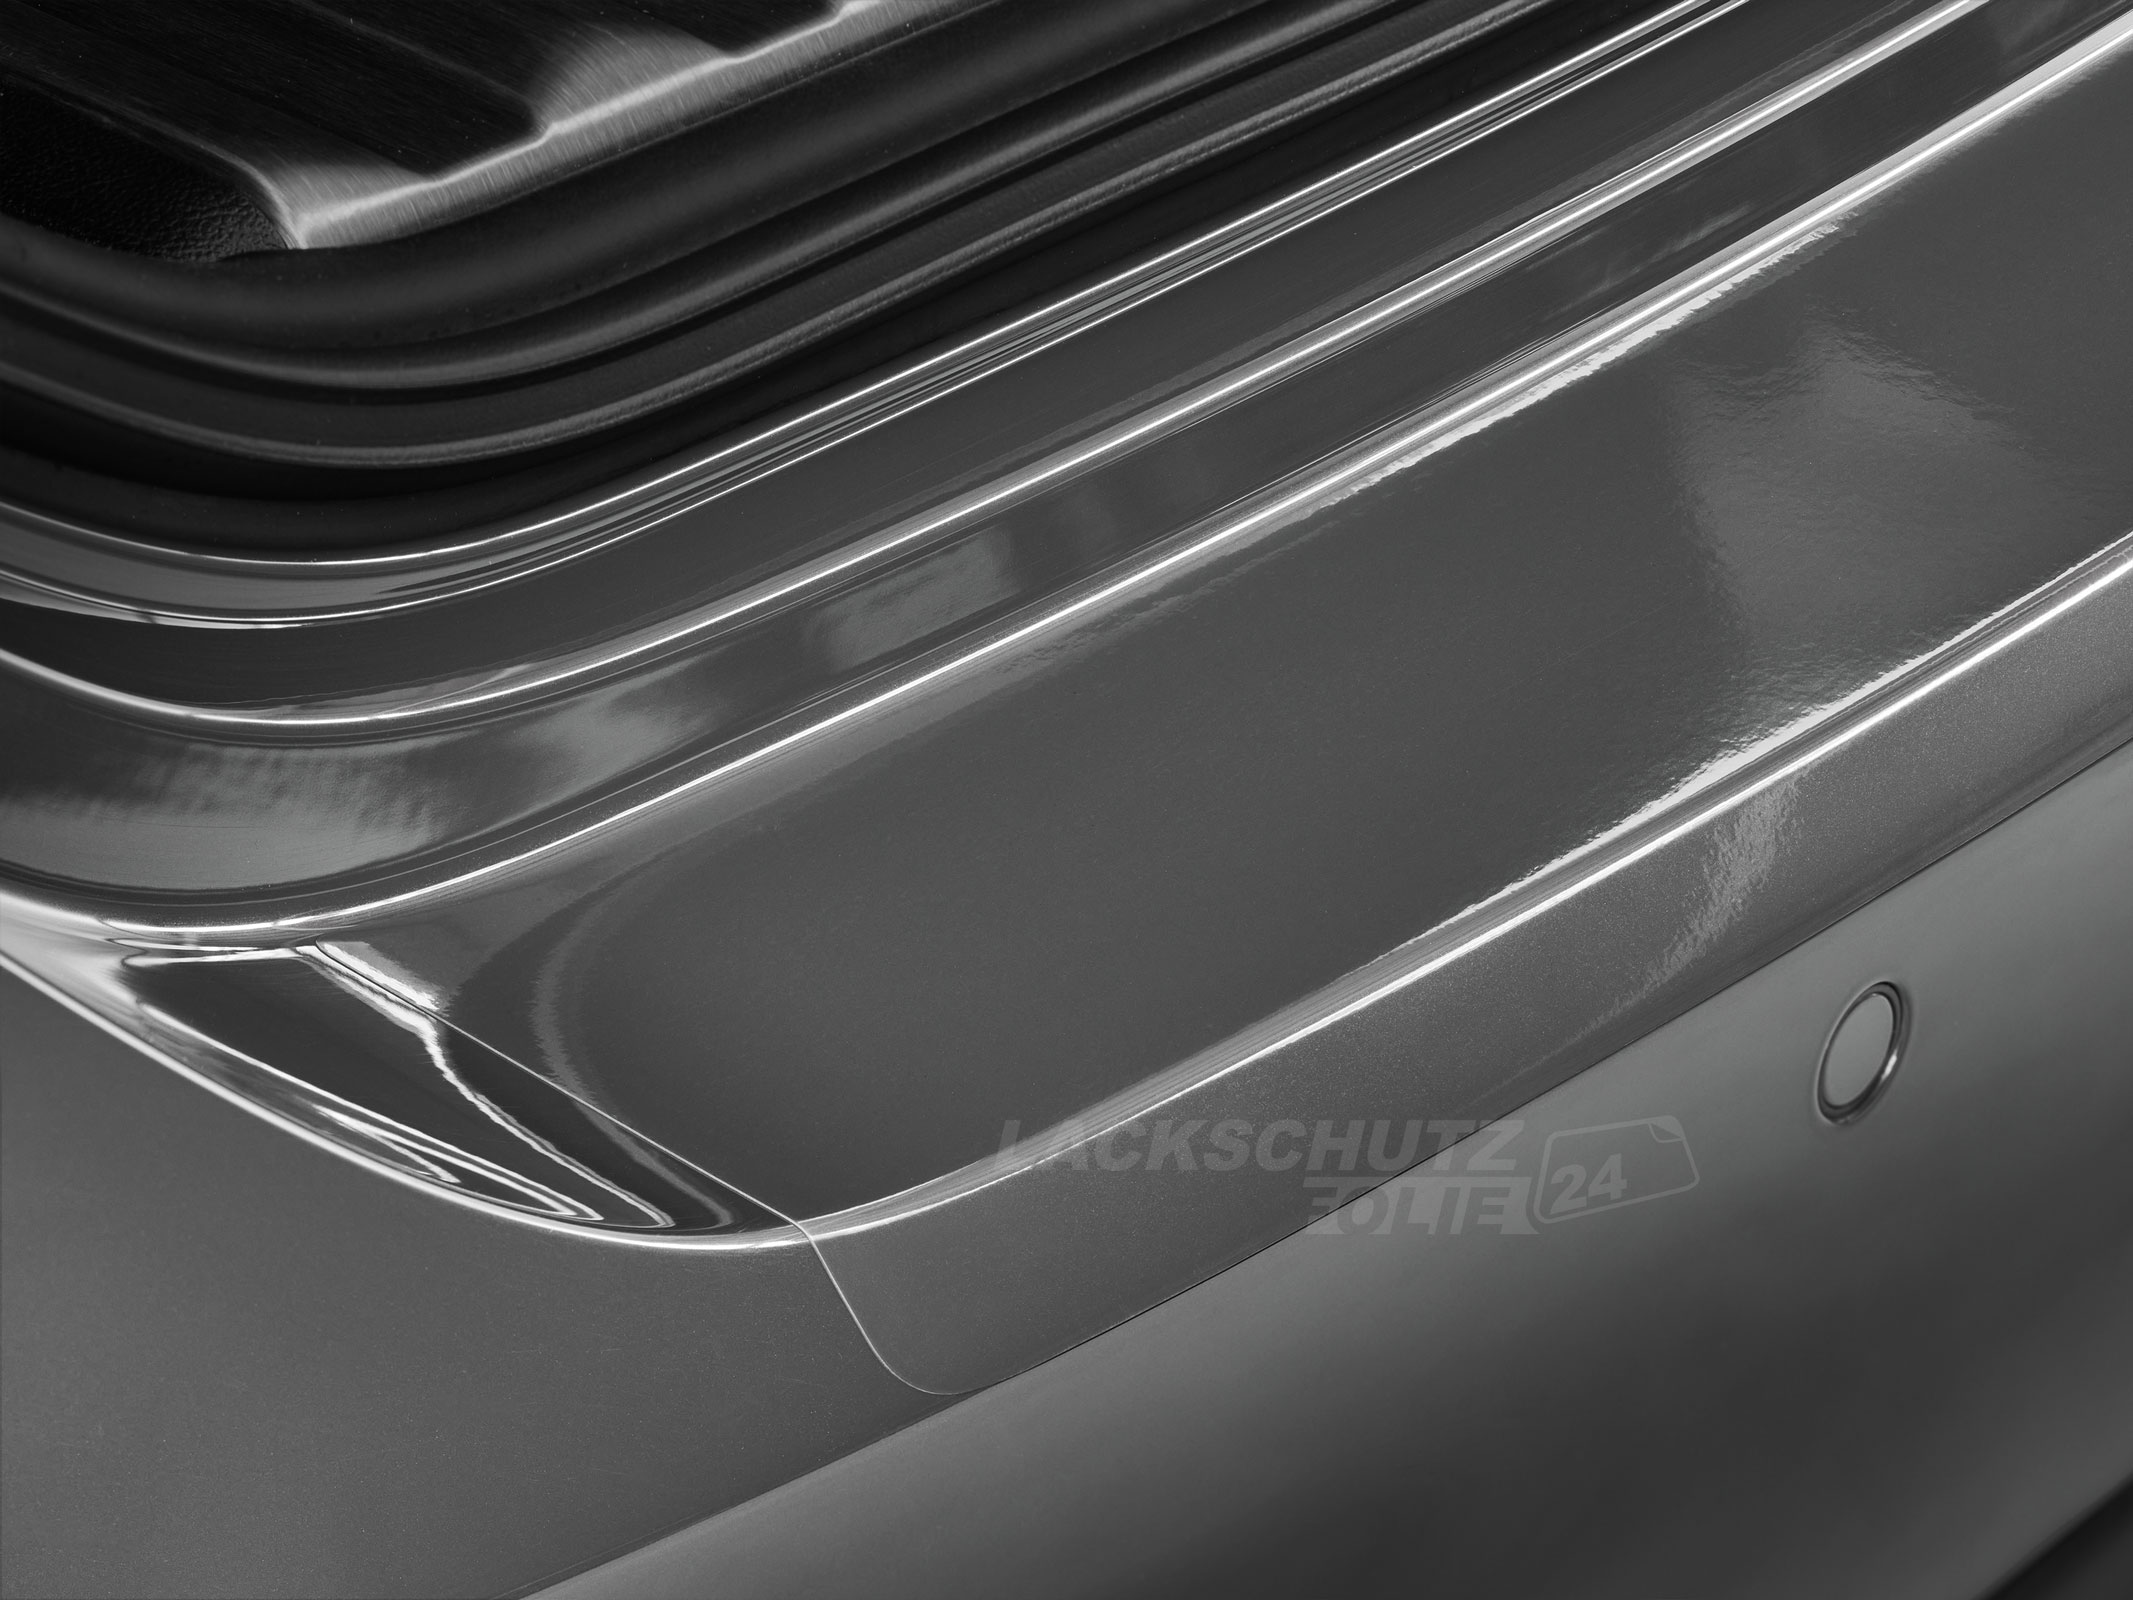 Ladekantenschutzfolie - Transparent Glatt Hochglänzend 240 µm stark für BMW X3 Typ G01, Facelift, ab BJ 08/2021